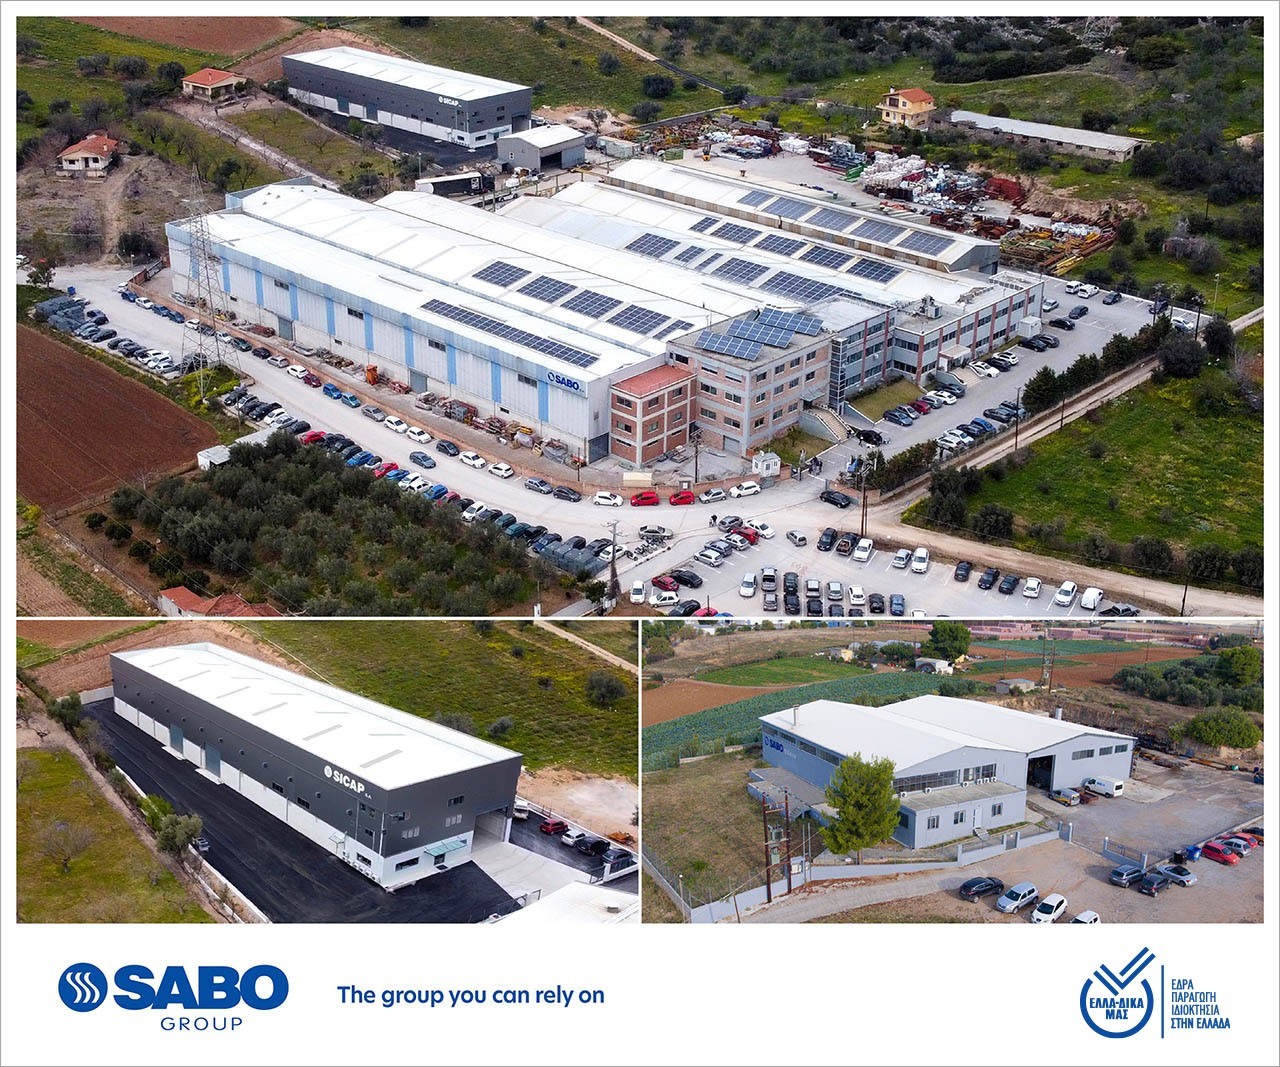 Ο κύκλος εργασιών του ομίλου SABO αναμένεται να ξεπεράσει τα 80 εκατ. ευρώ το 2022